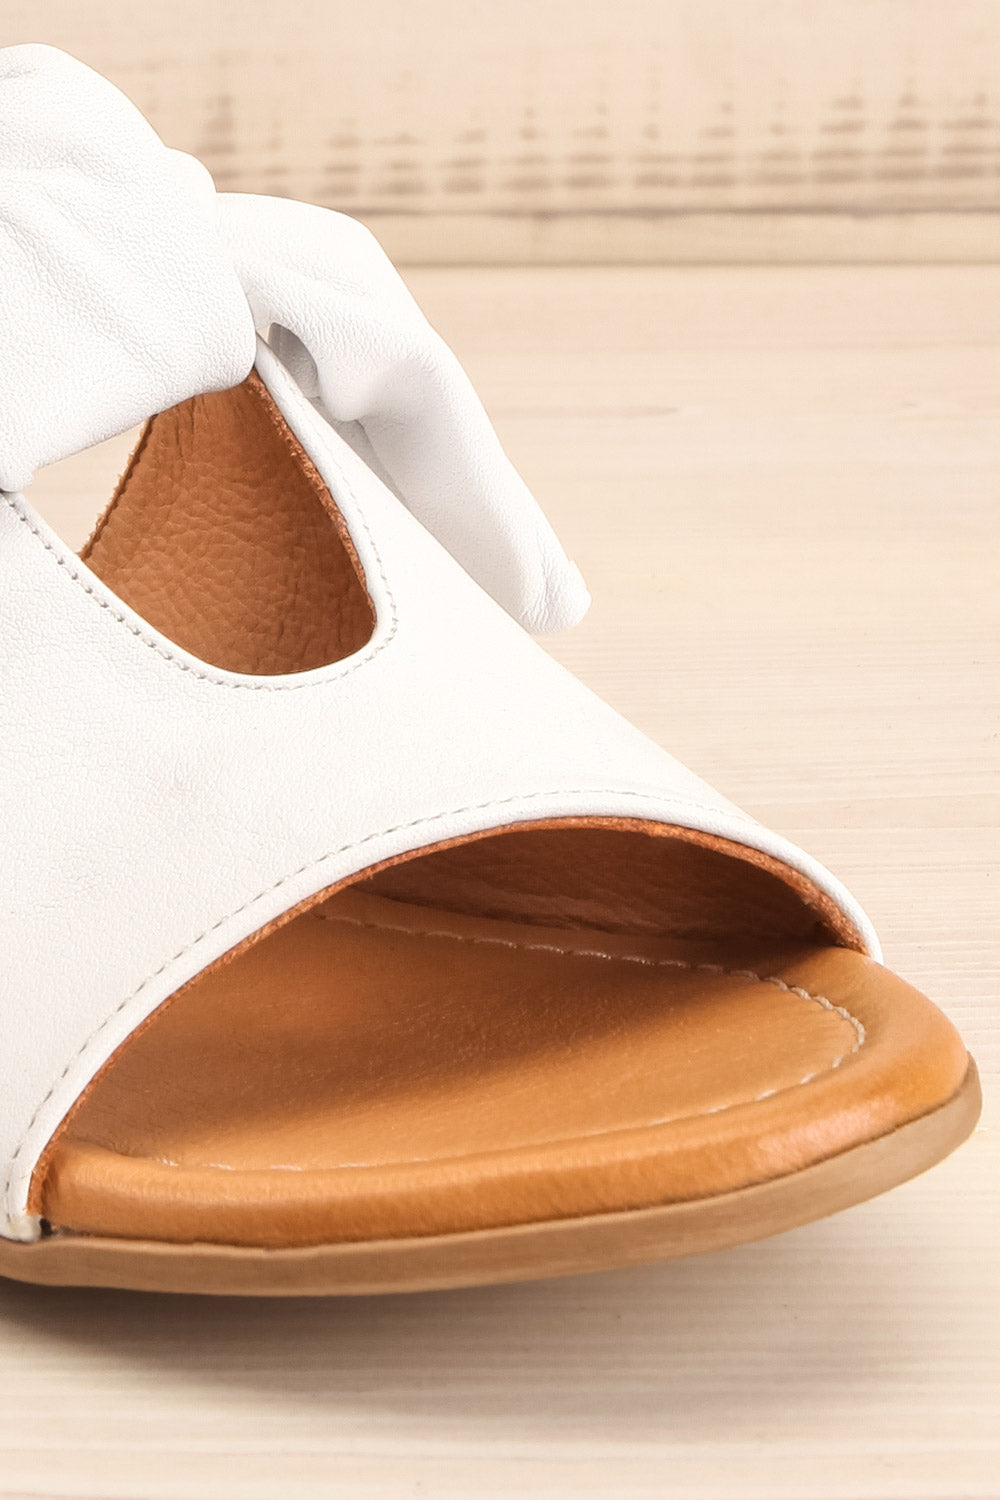 Ebelmen White Slip-On Sandals w/ Bow | La petite garçonne front close-up